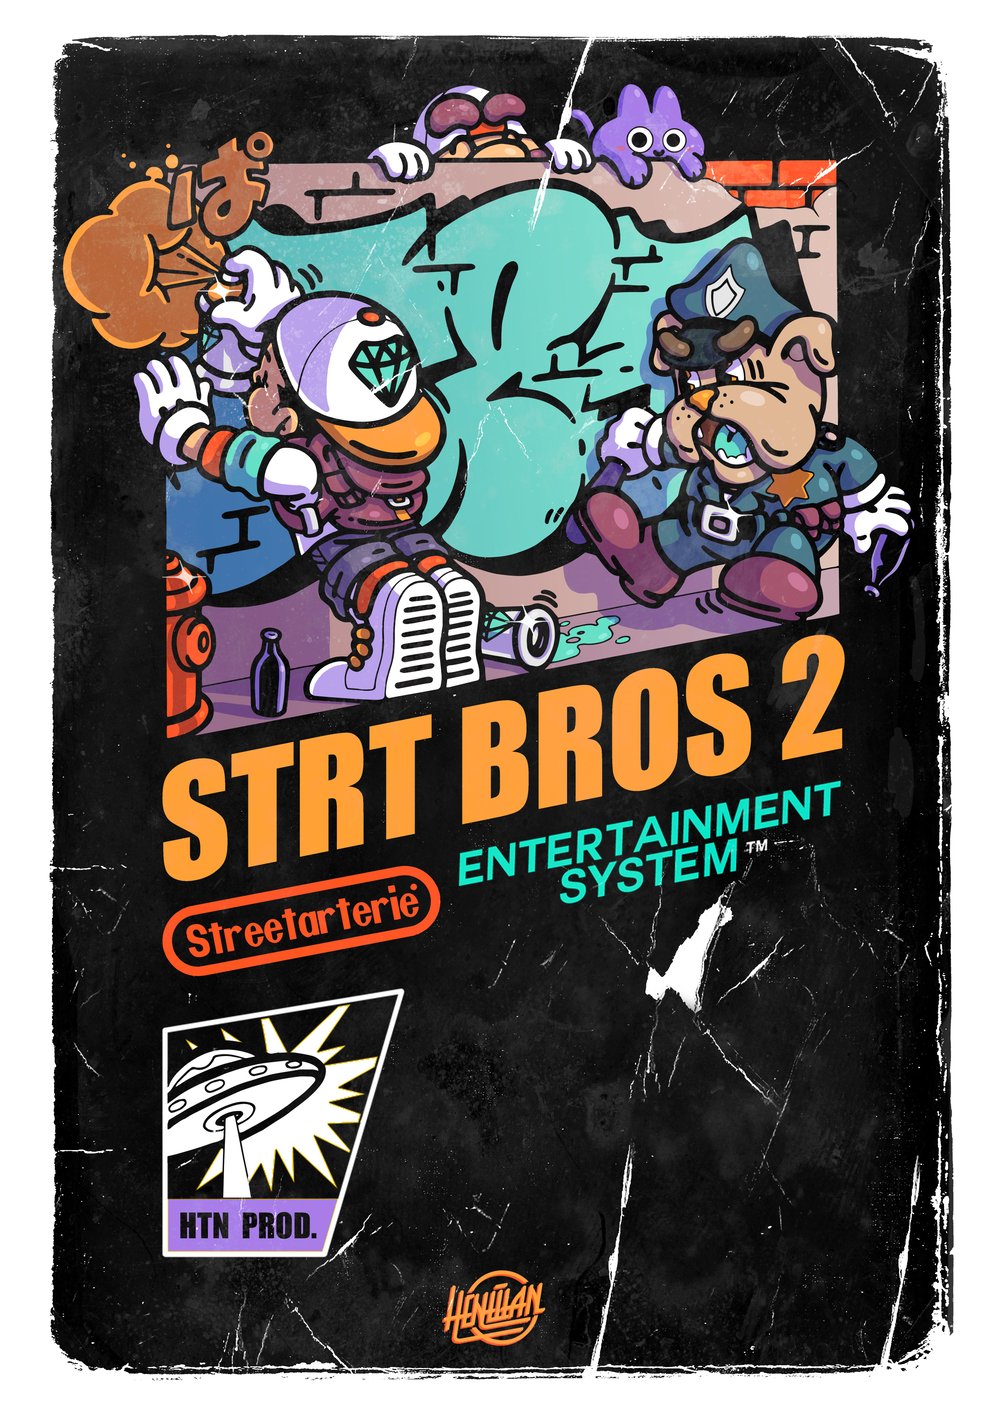 STRT Bros 2